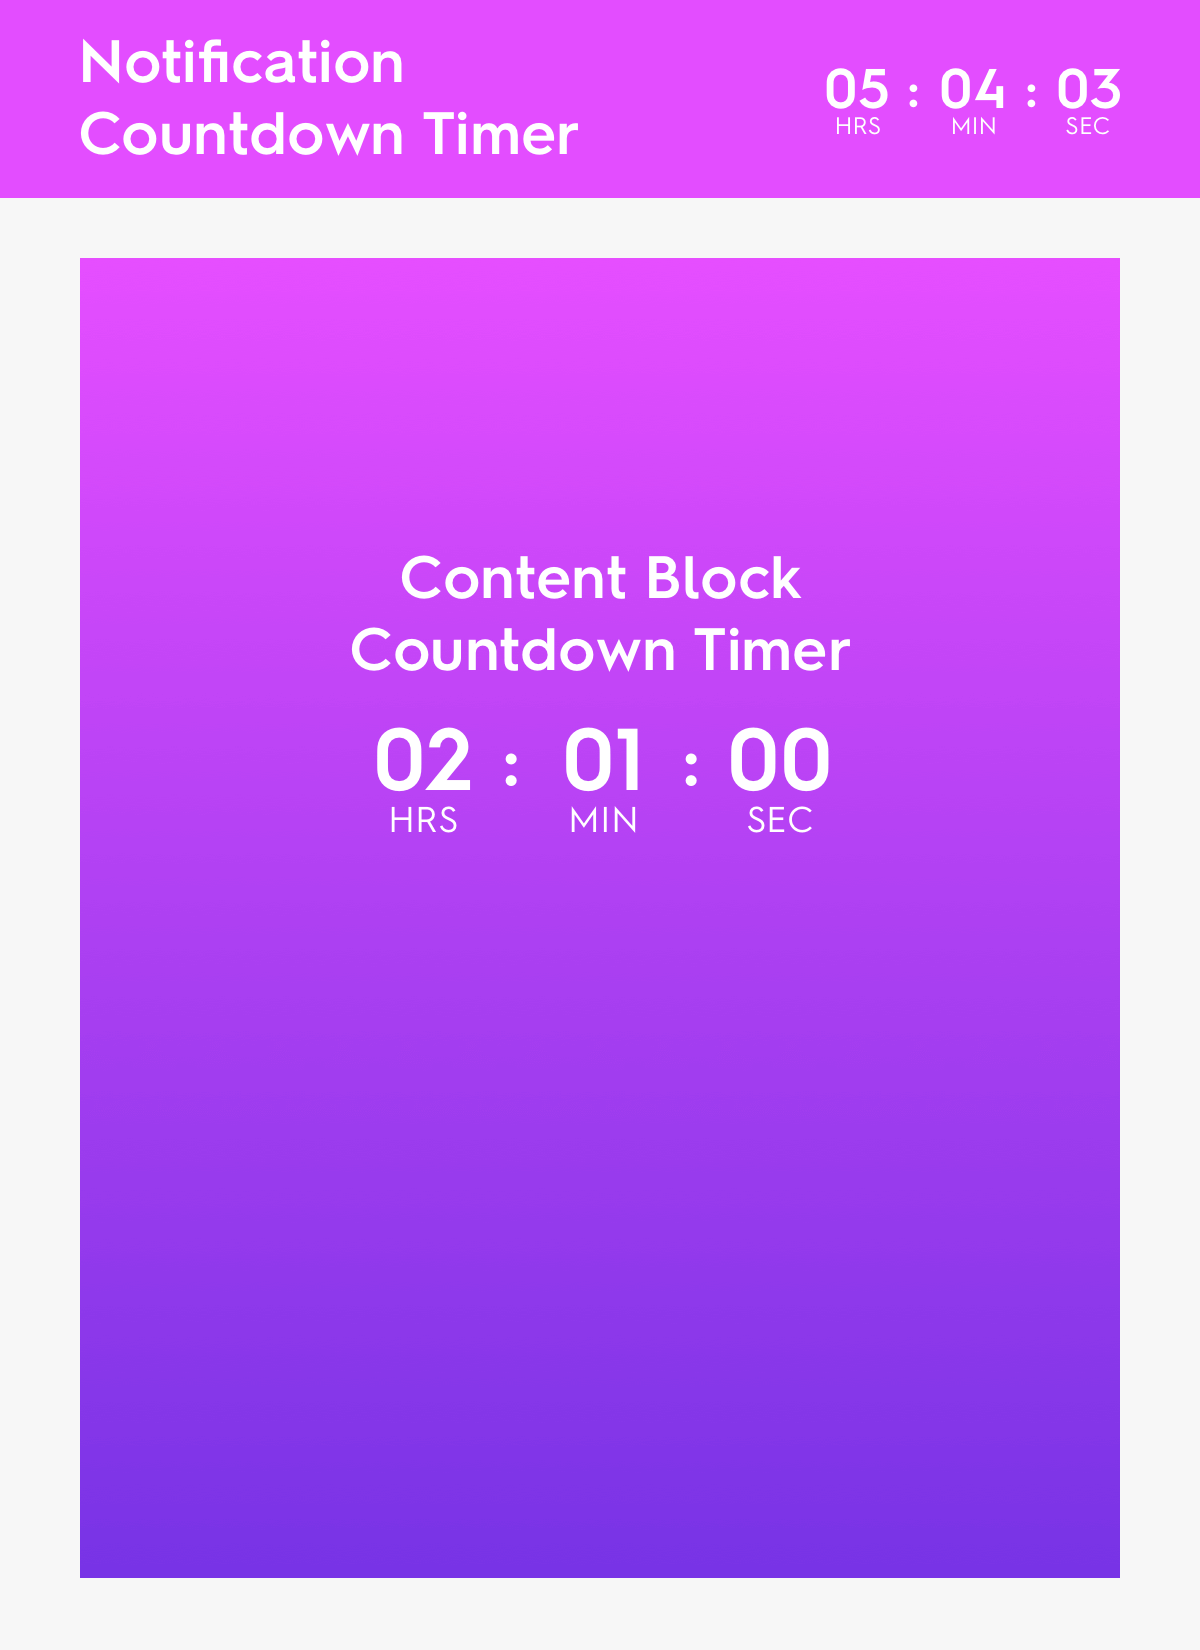 content blocks mockup generic countdown timer